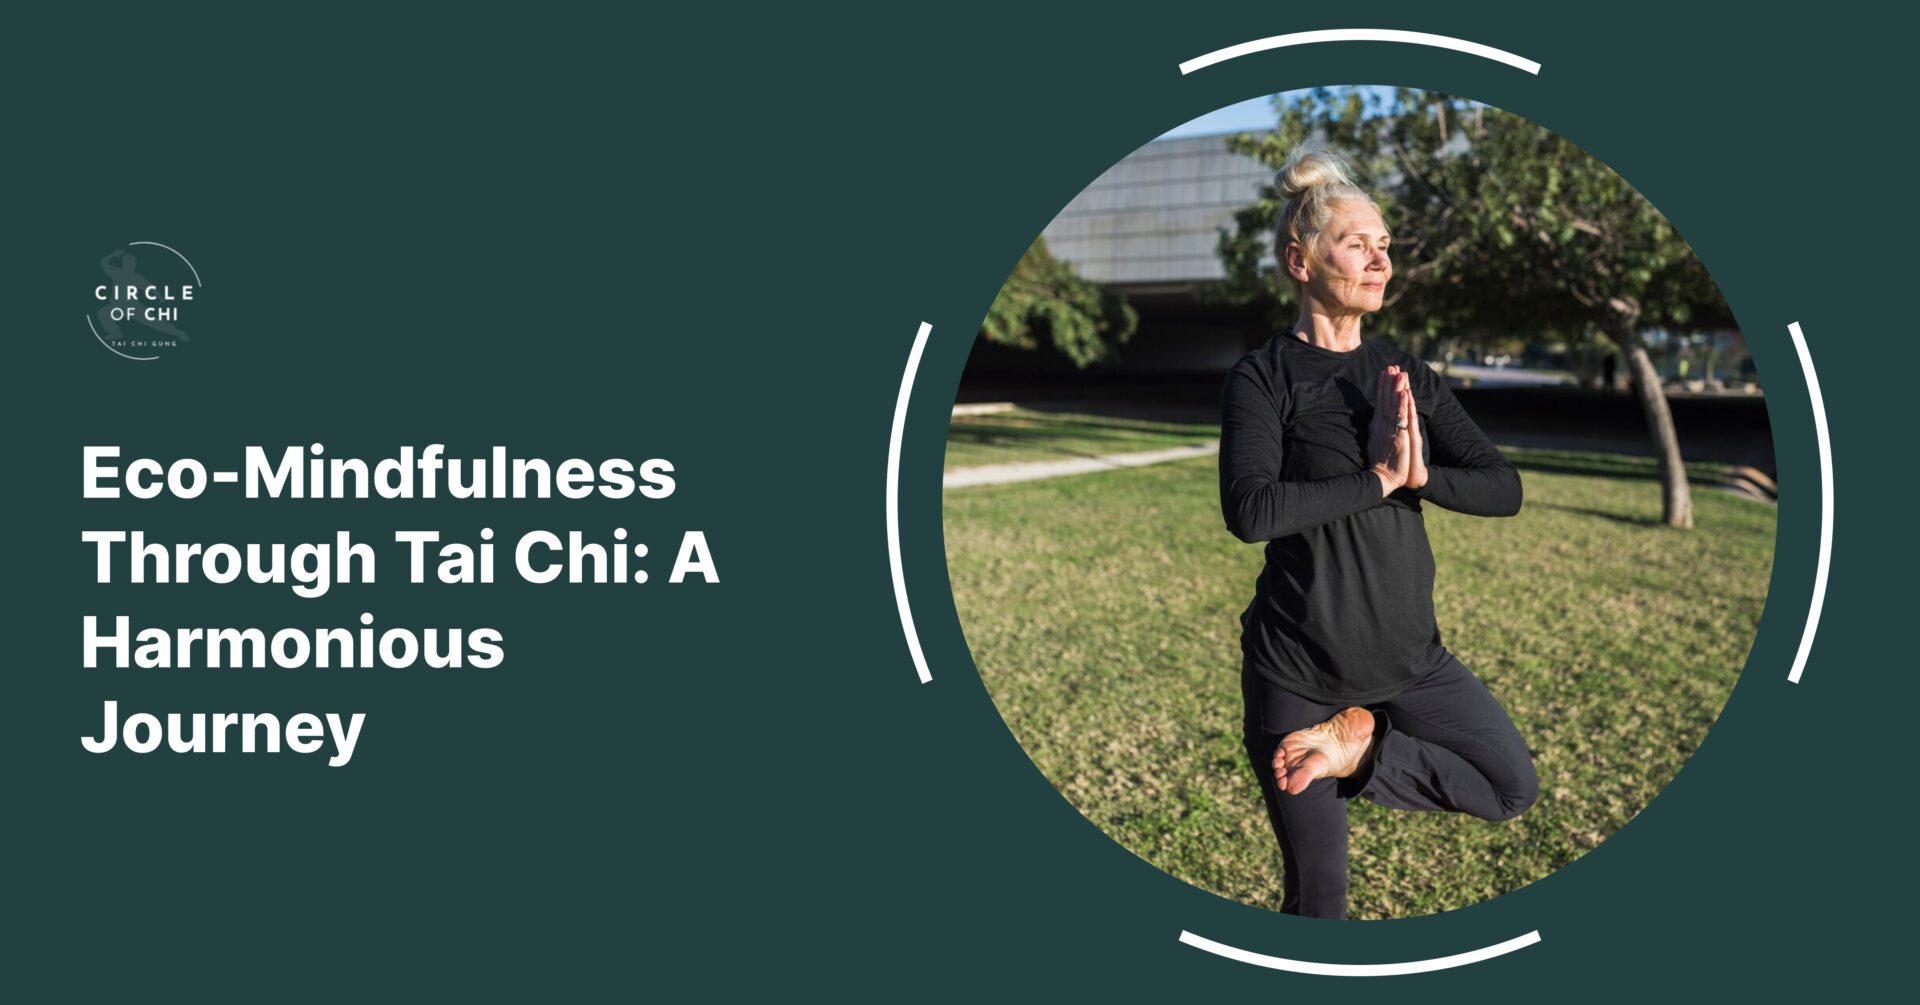 Eco-Mindfulness Through Tai Chi: A Harmonious Journey